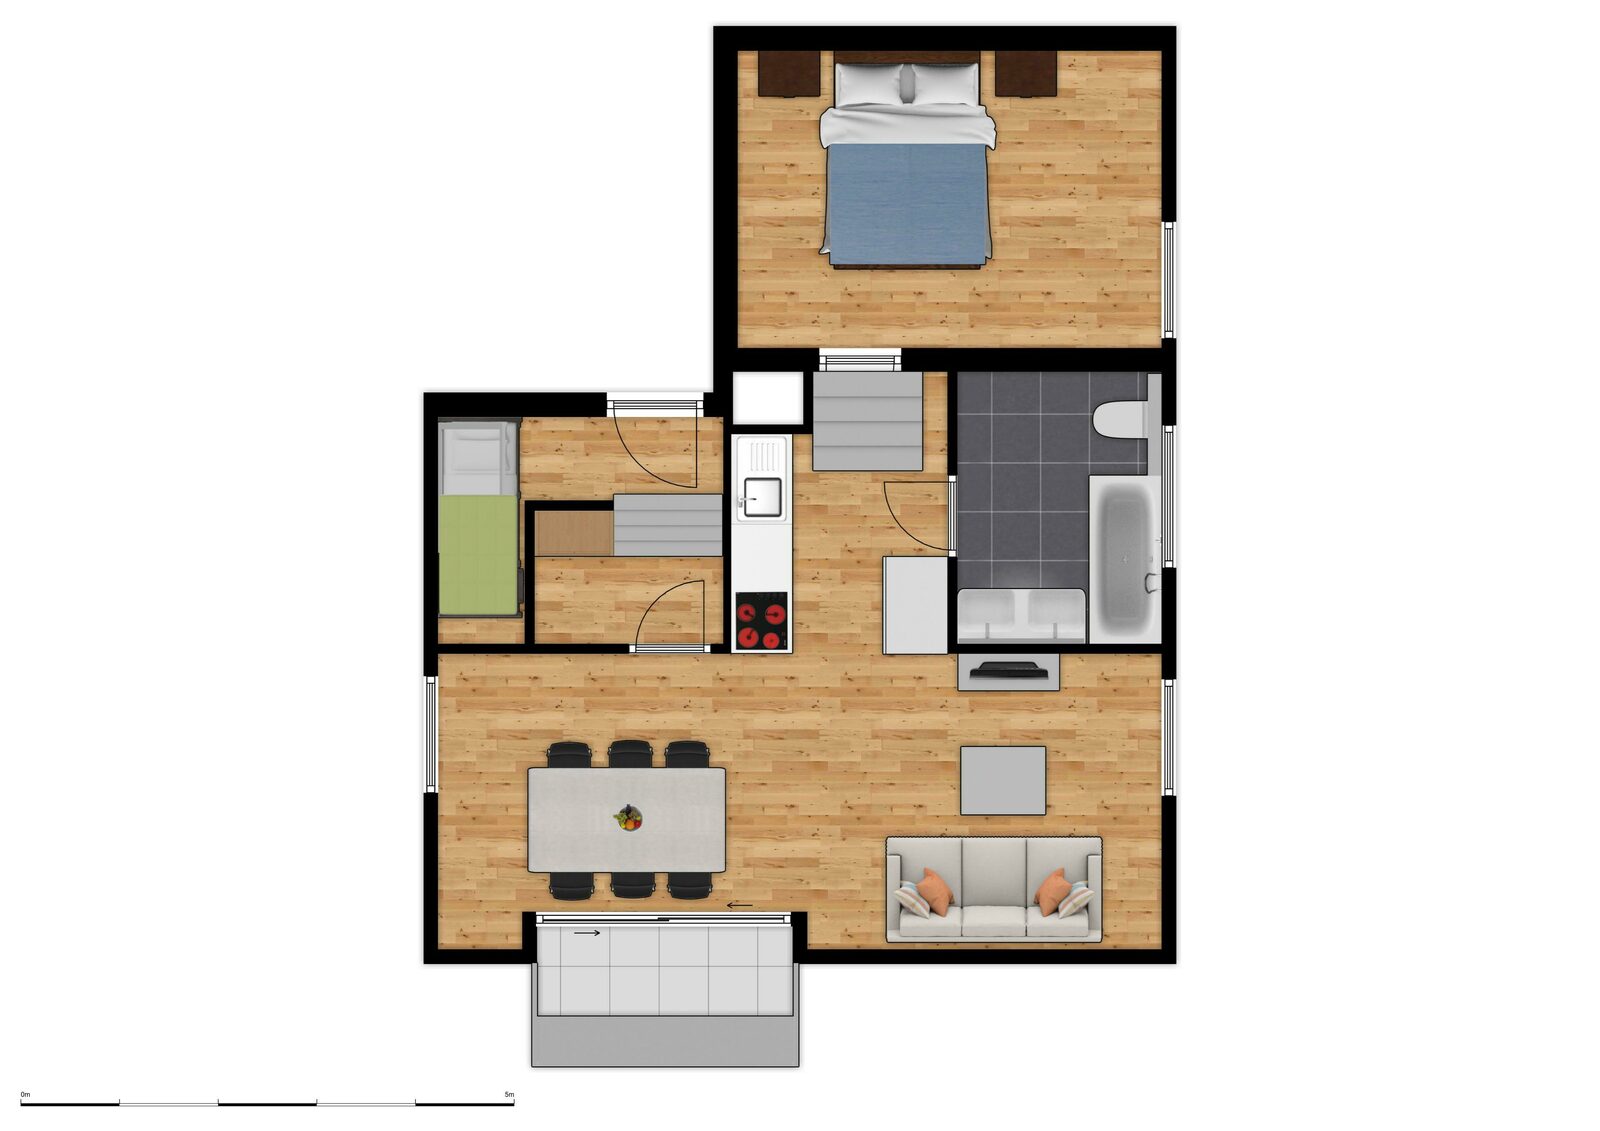 Comfort Suite - 6p | Slaapkamer - Slaaphoek - Zetelbed